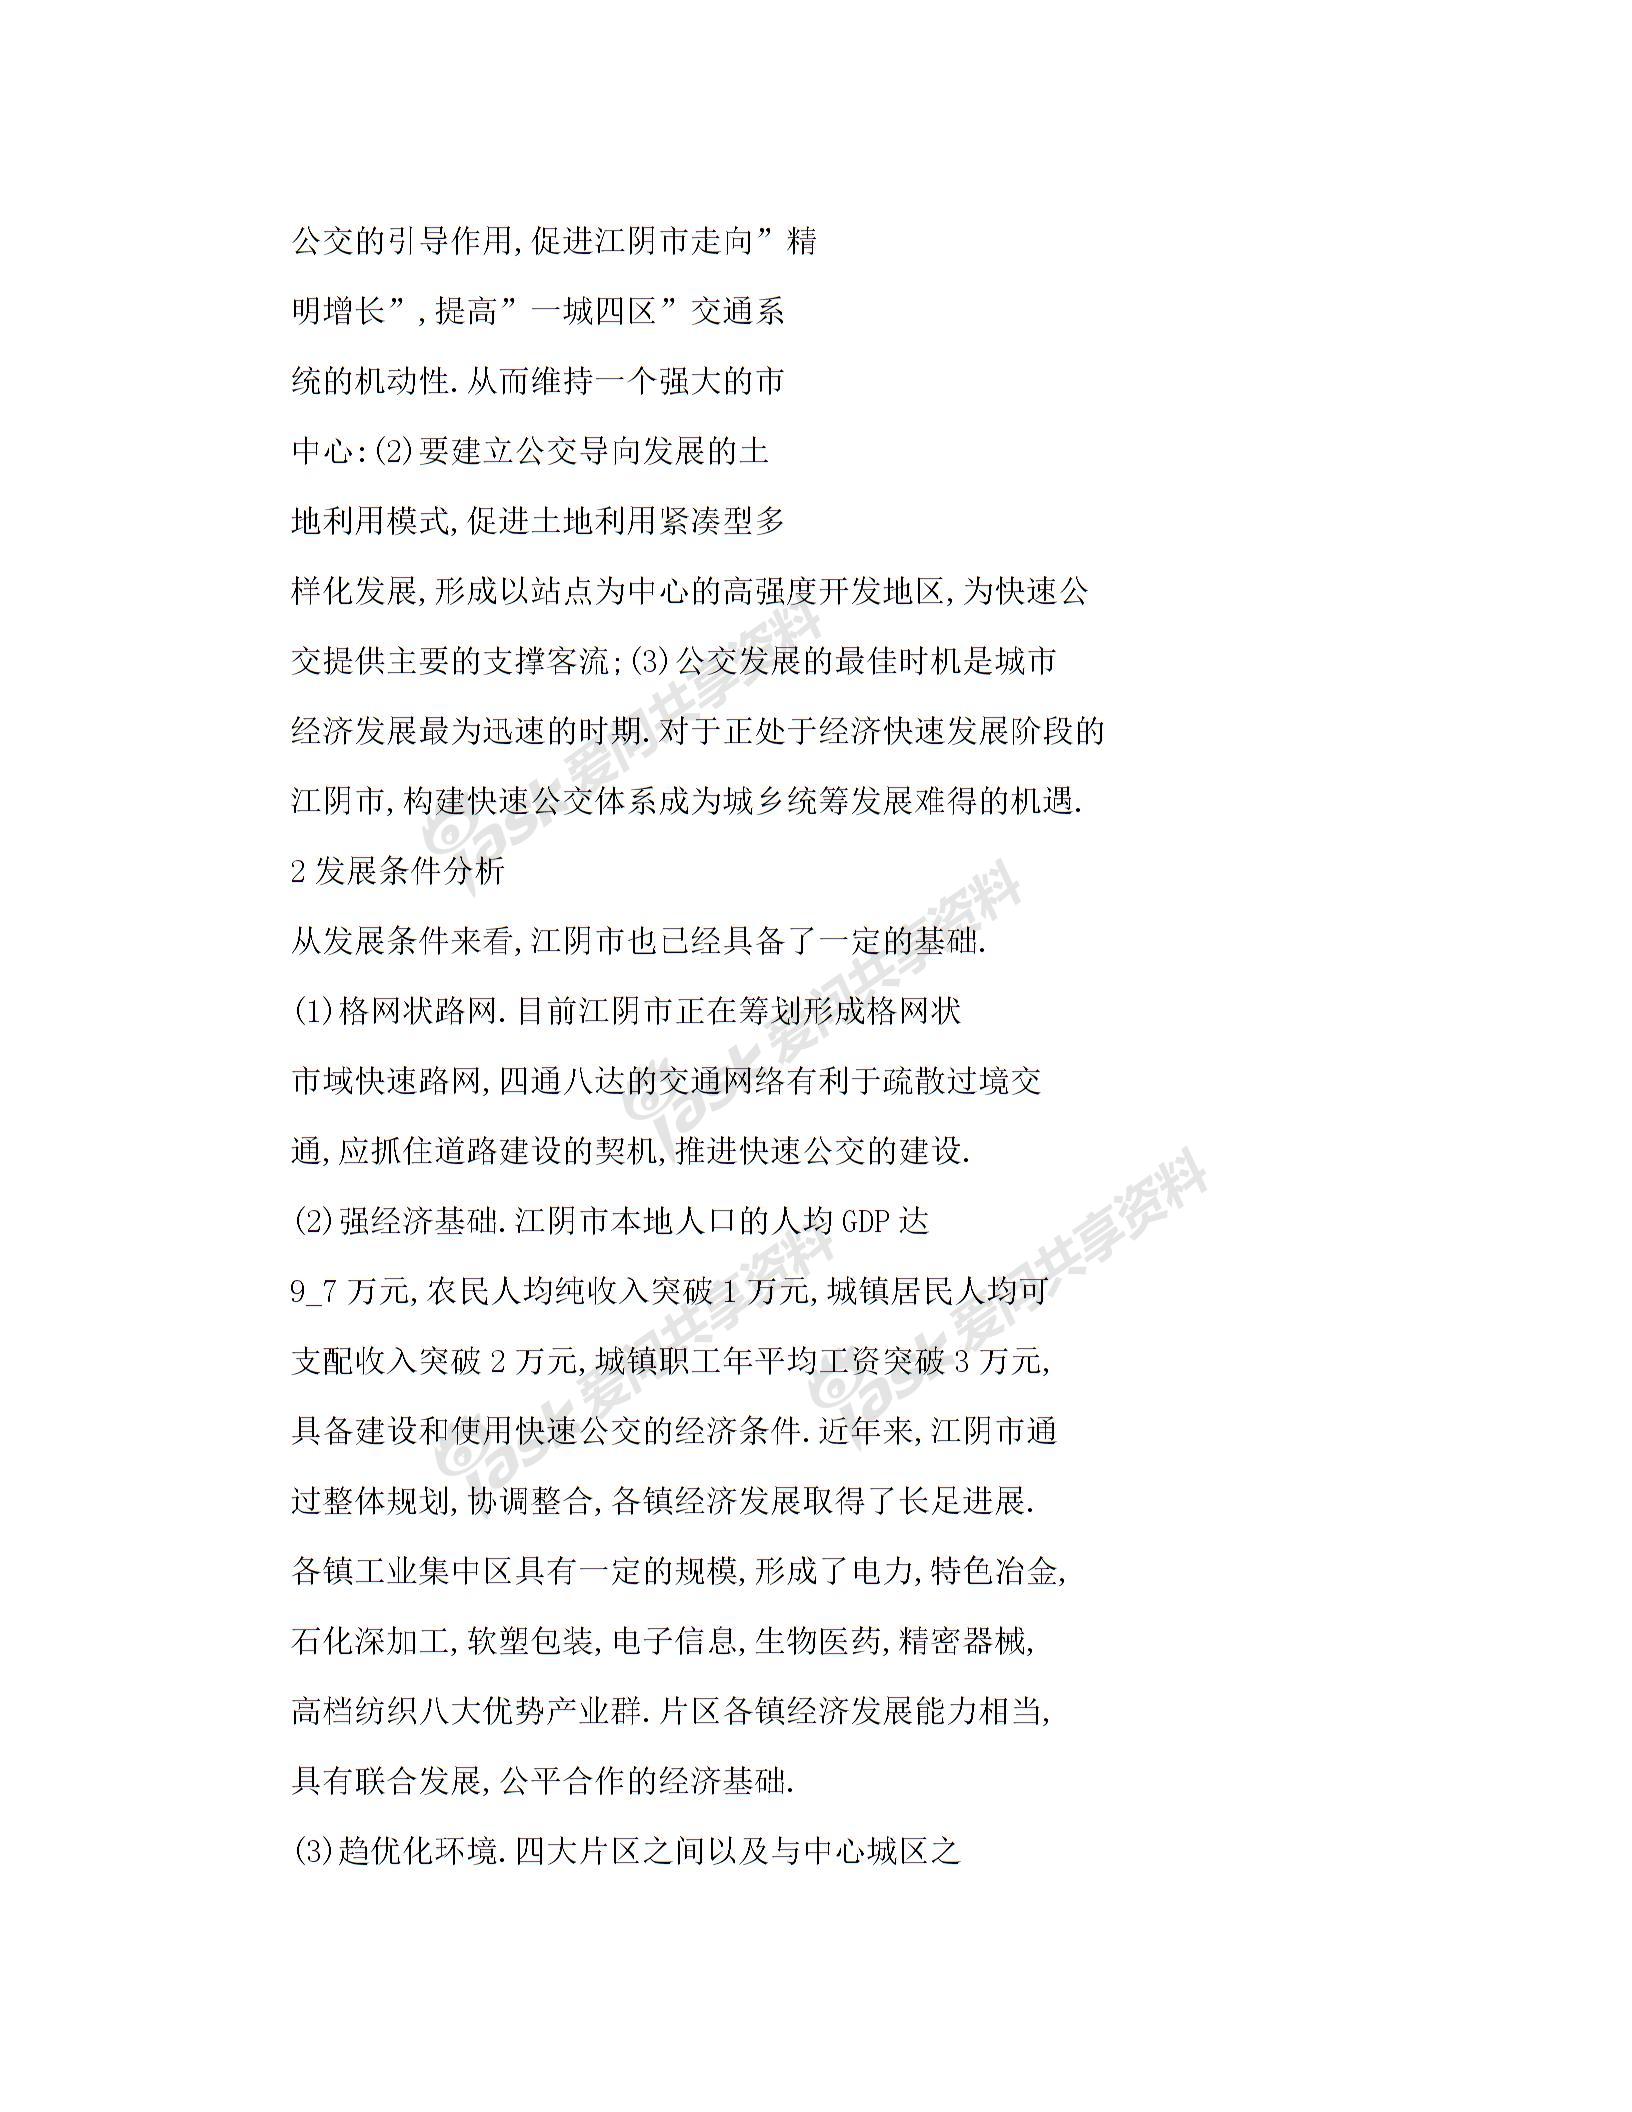 【word】 交通引导理念下的快速公交线网规划——以江苏省江阴市为例图片4